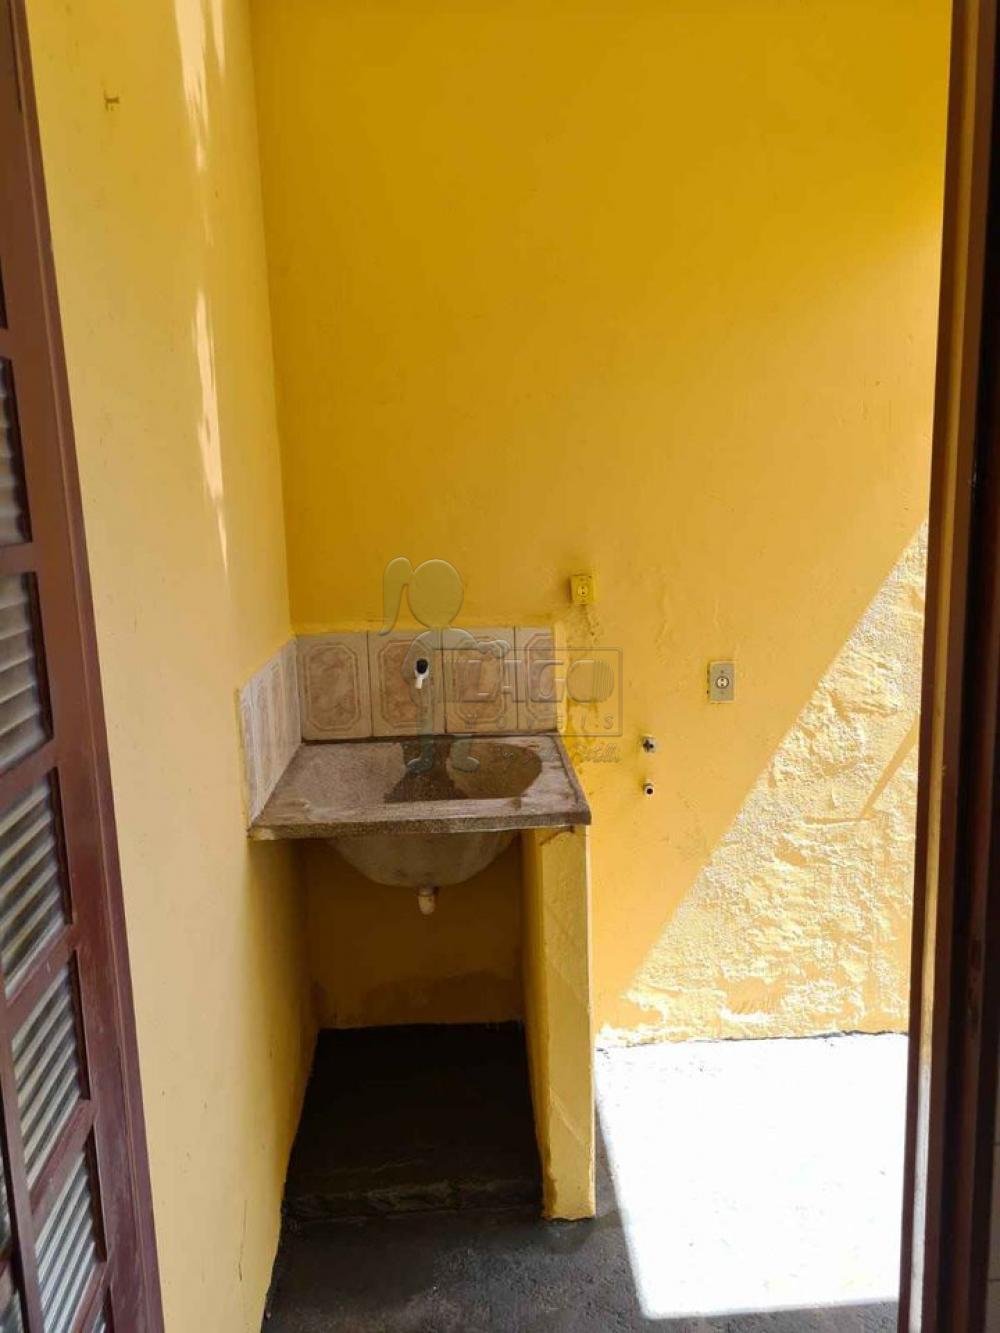 Comprar Casa / Padrão em Ribeirão Preto R$ 1.200.000,00 - Foto 11